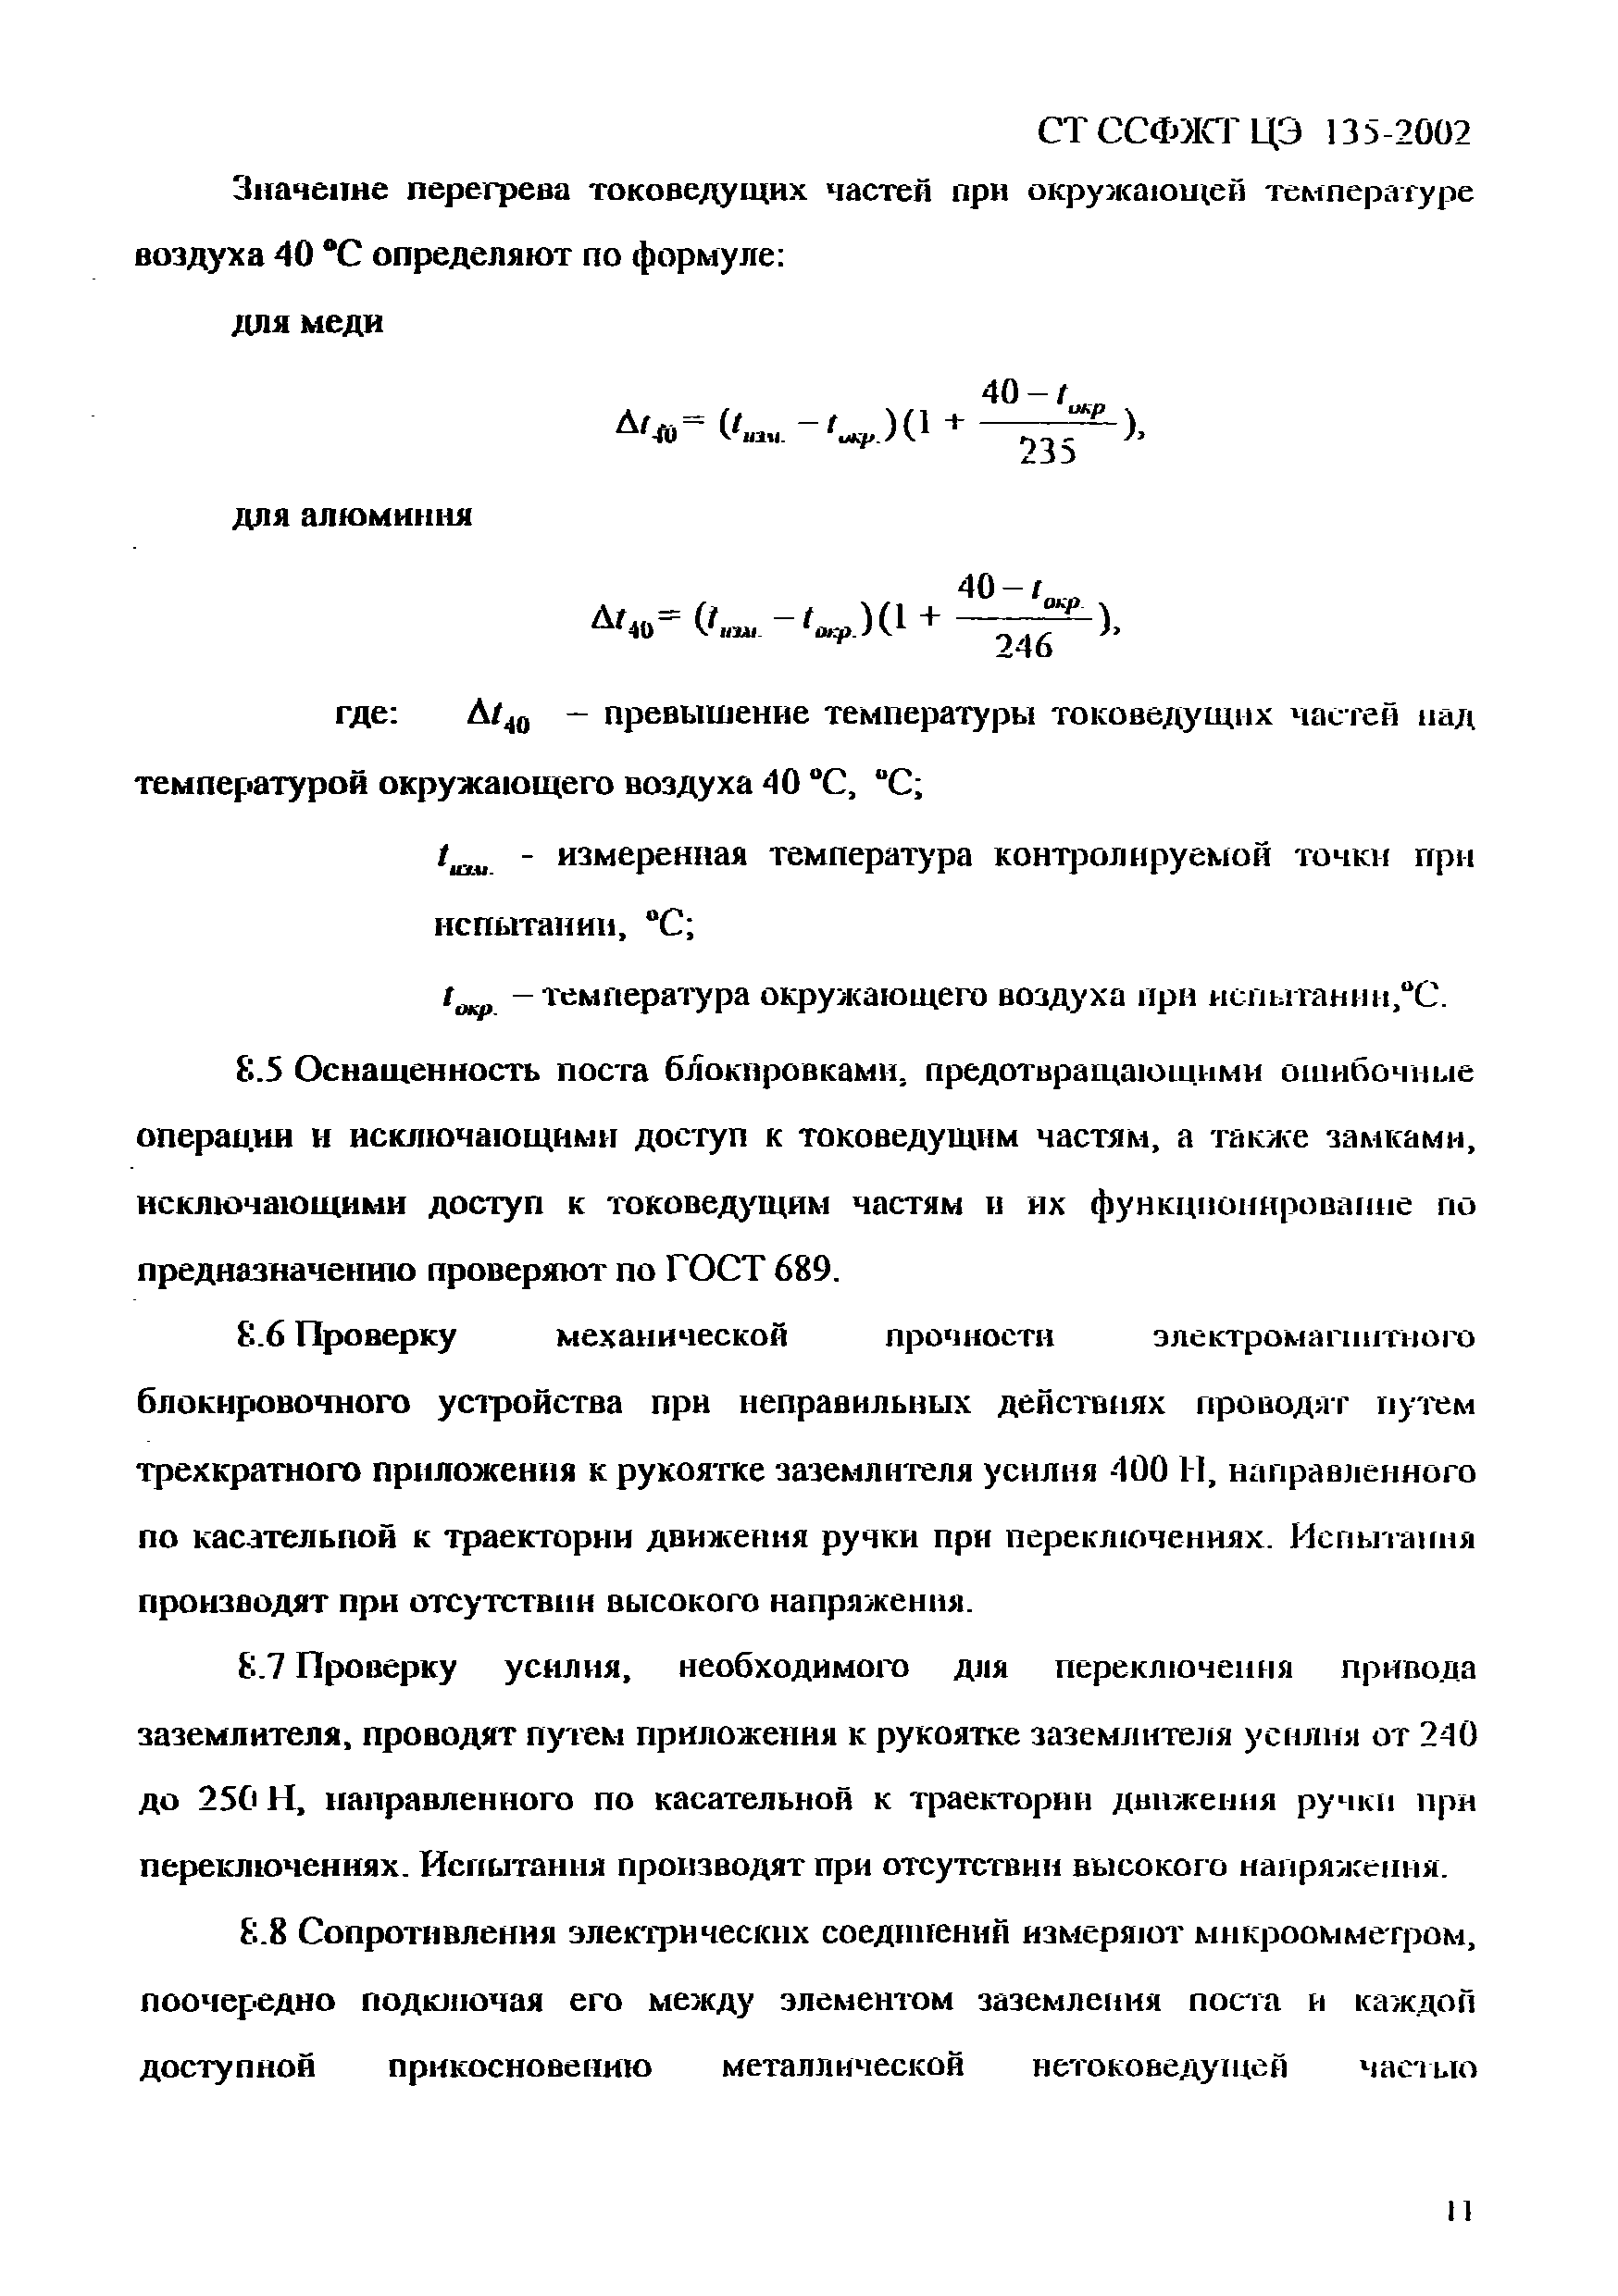 СТ ССФЖТ ЦЭ 135-2002